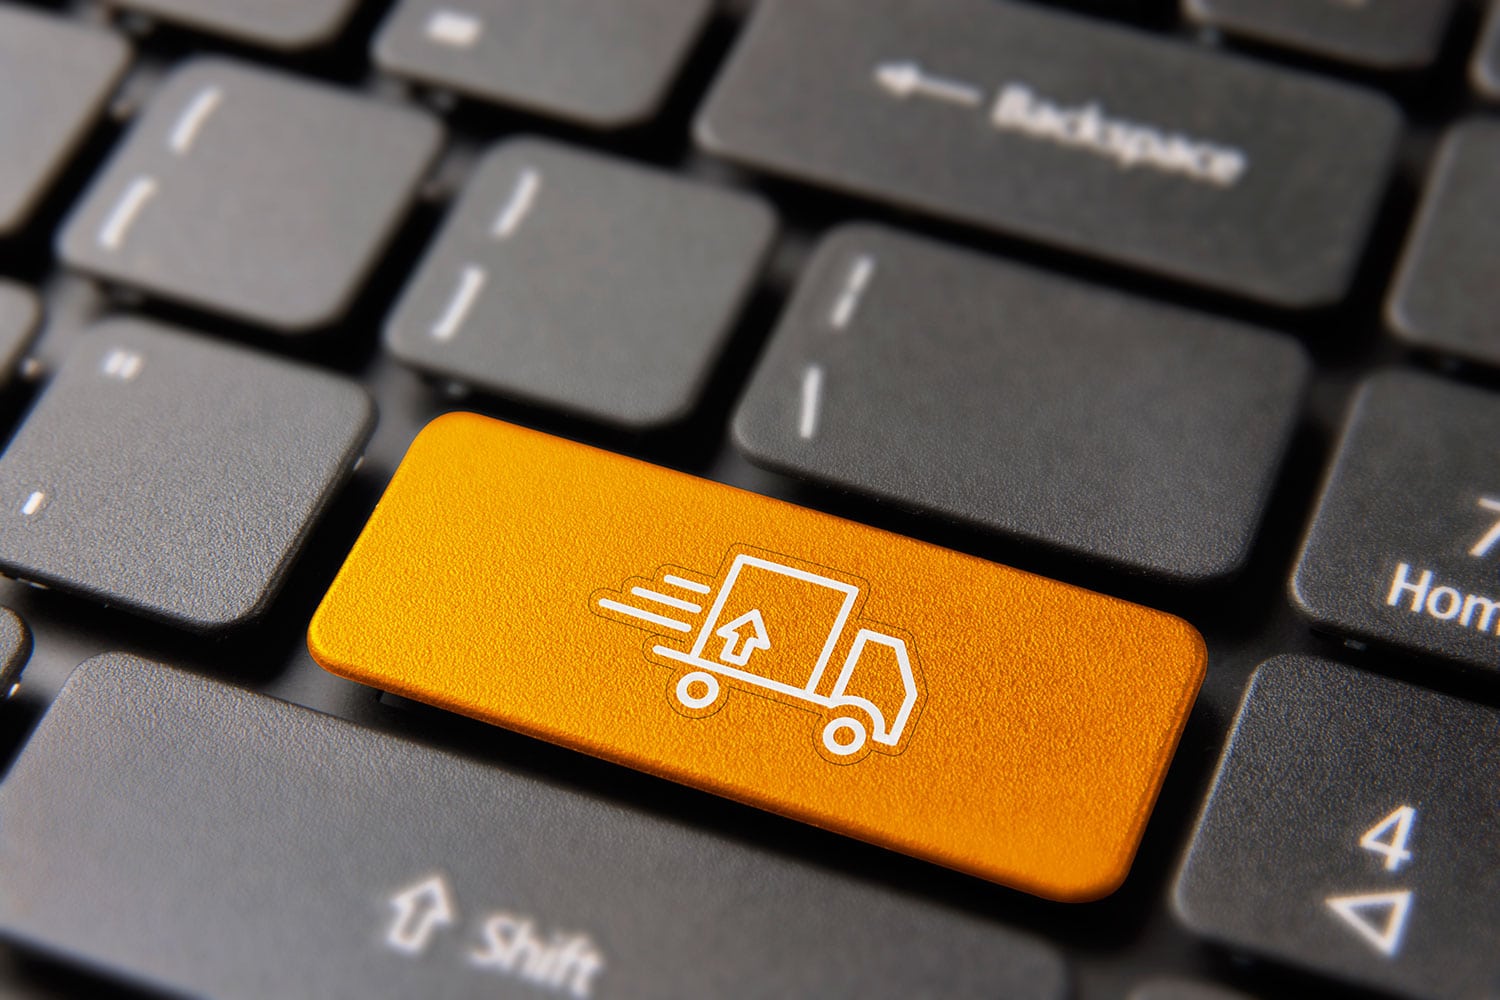 Botão com símbolo de caminhão em teclado de notebook, simbolizando o marketplace de frente para transporte de cargas.